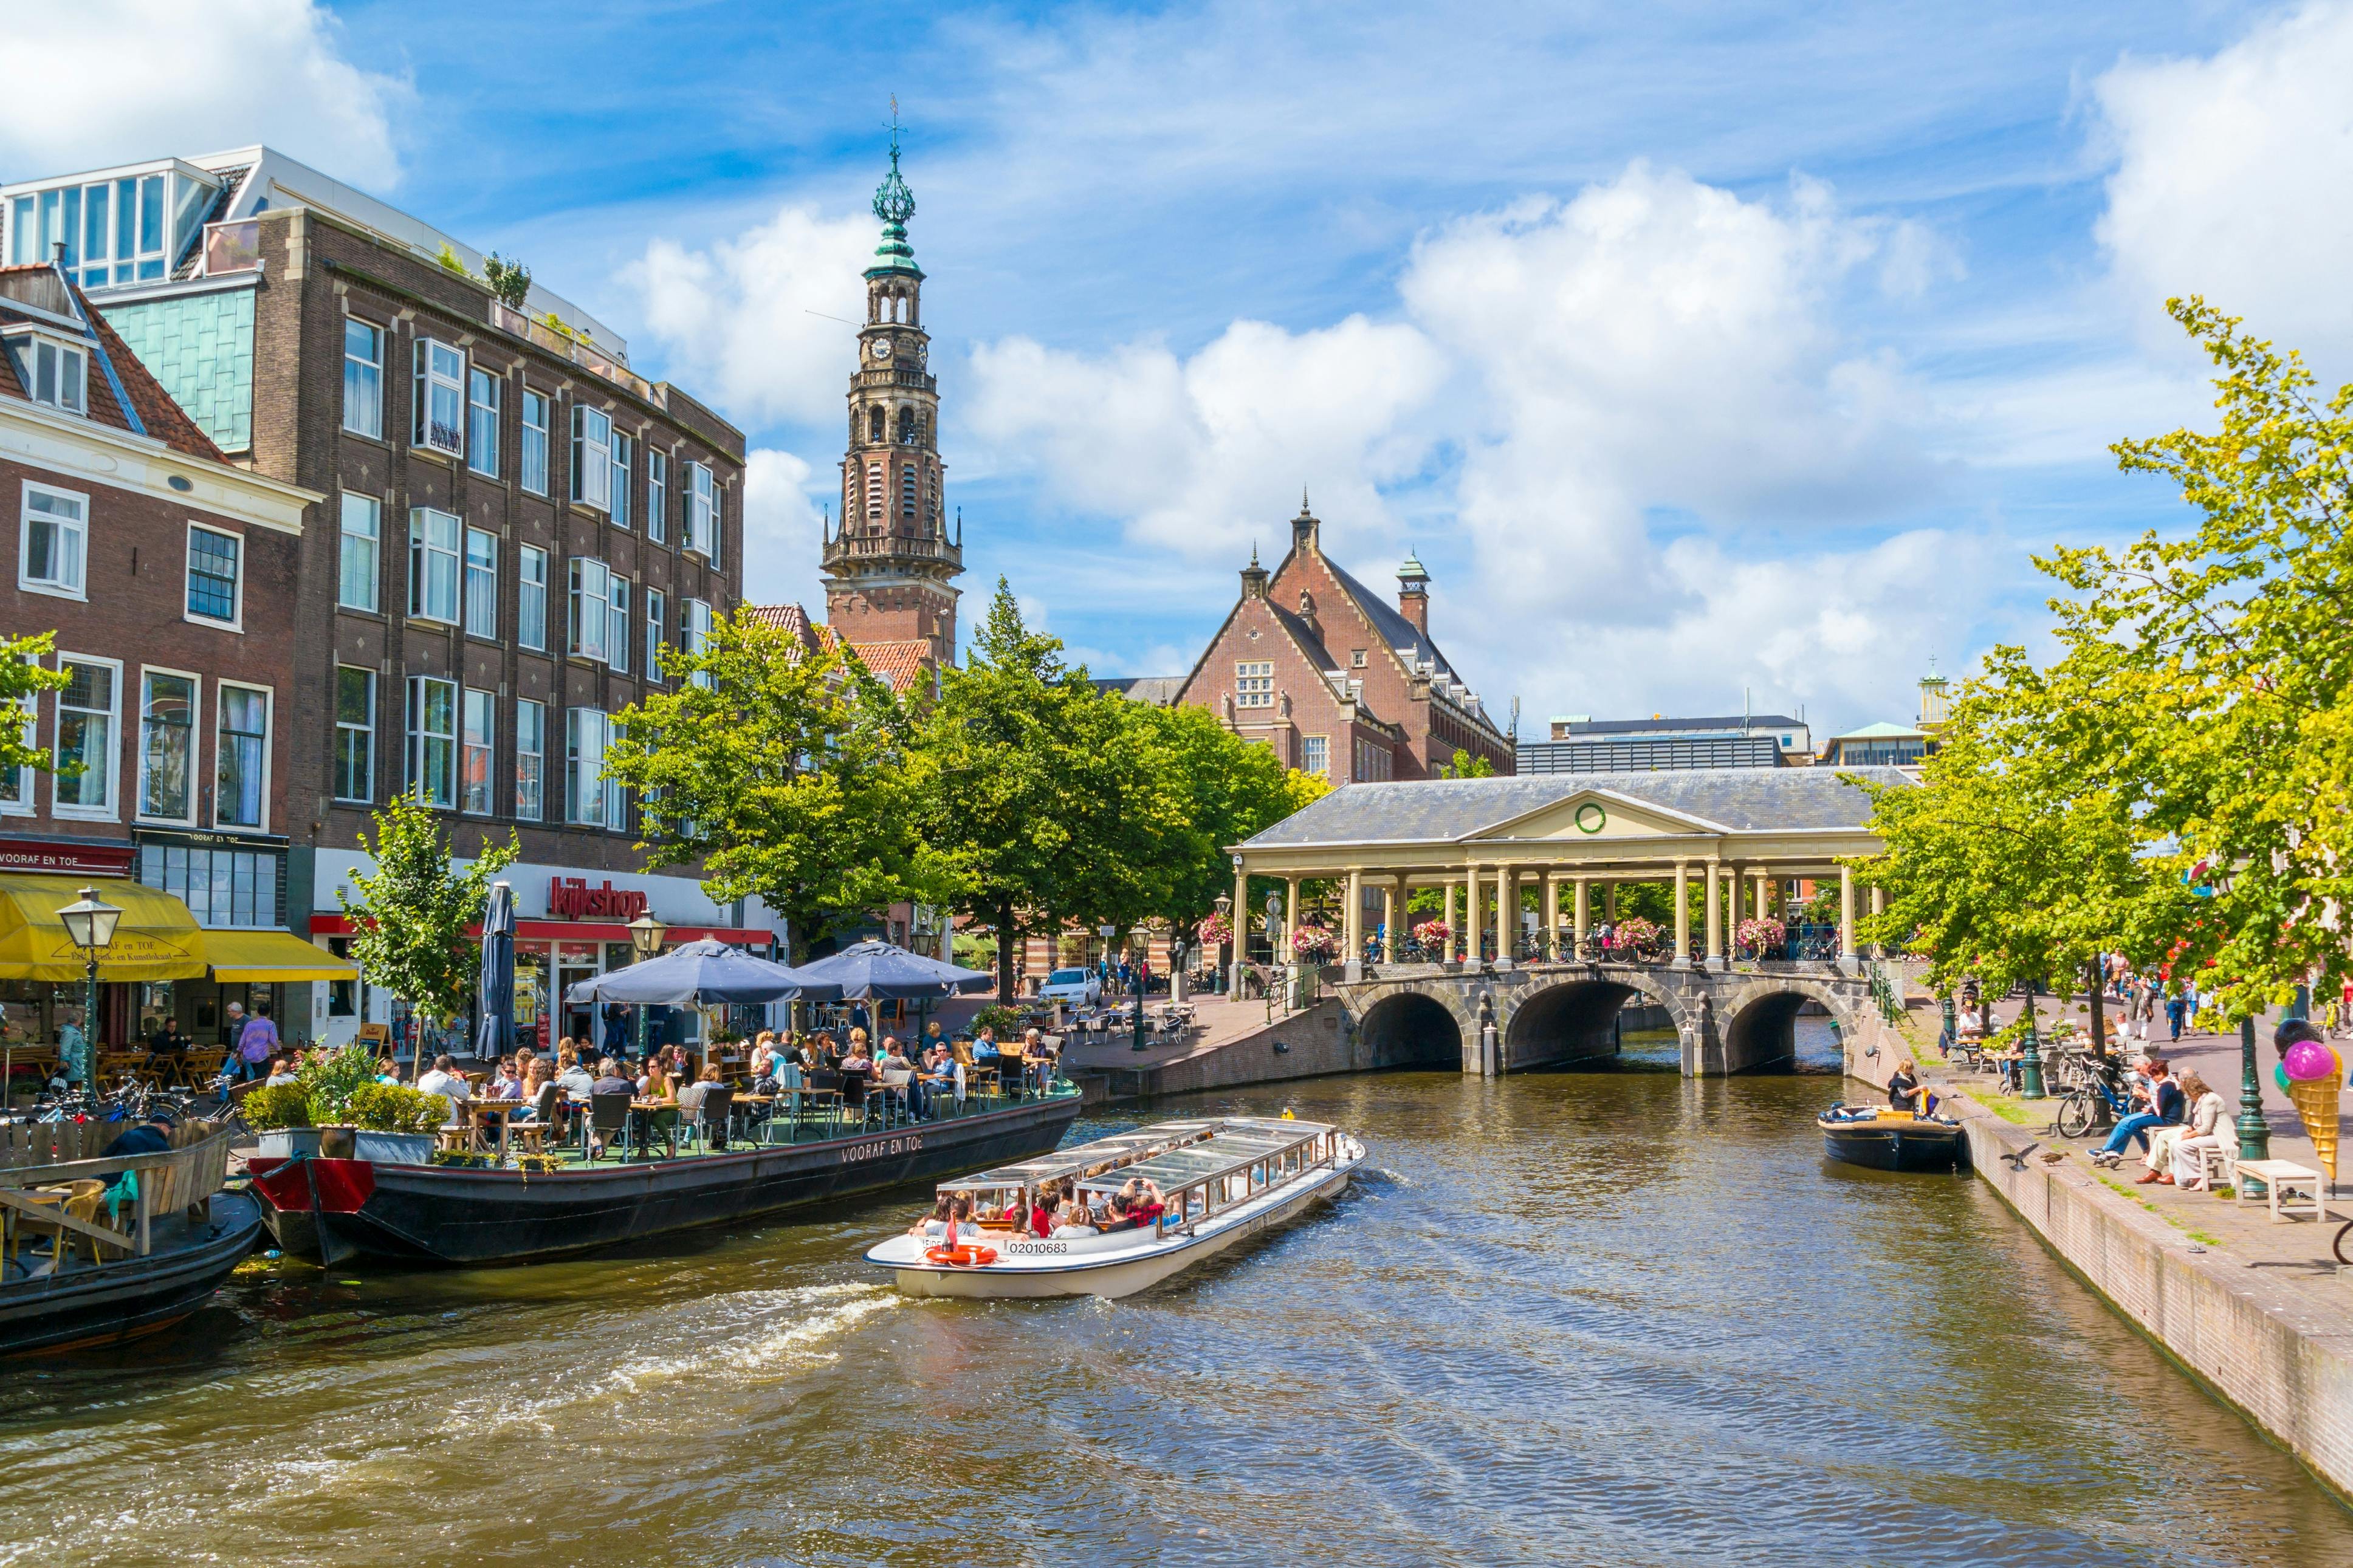 Escape Tour autoguiado, desafio interativo da cidade em Leiden